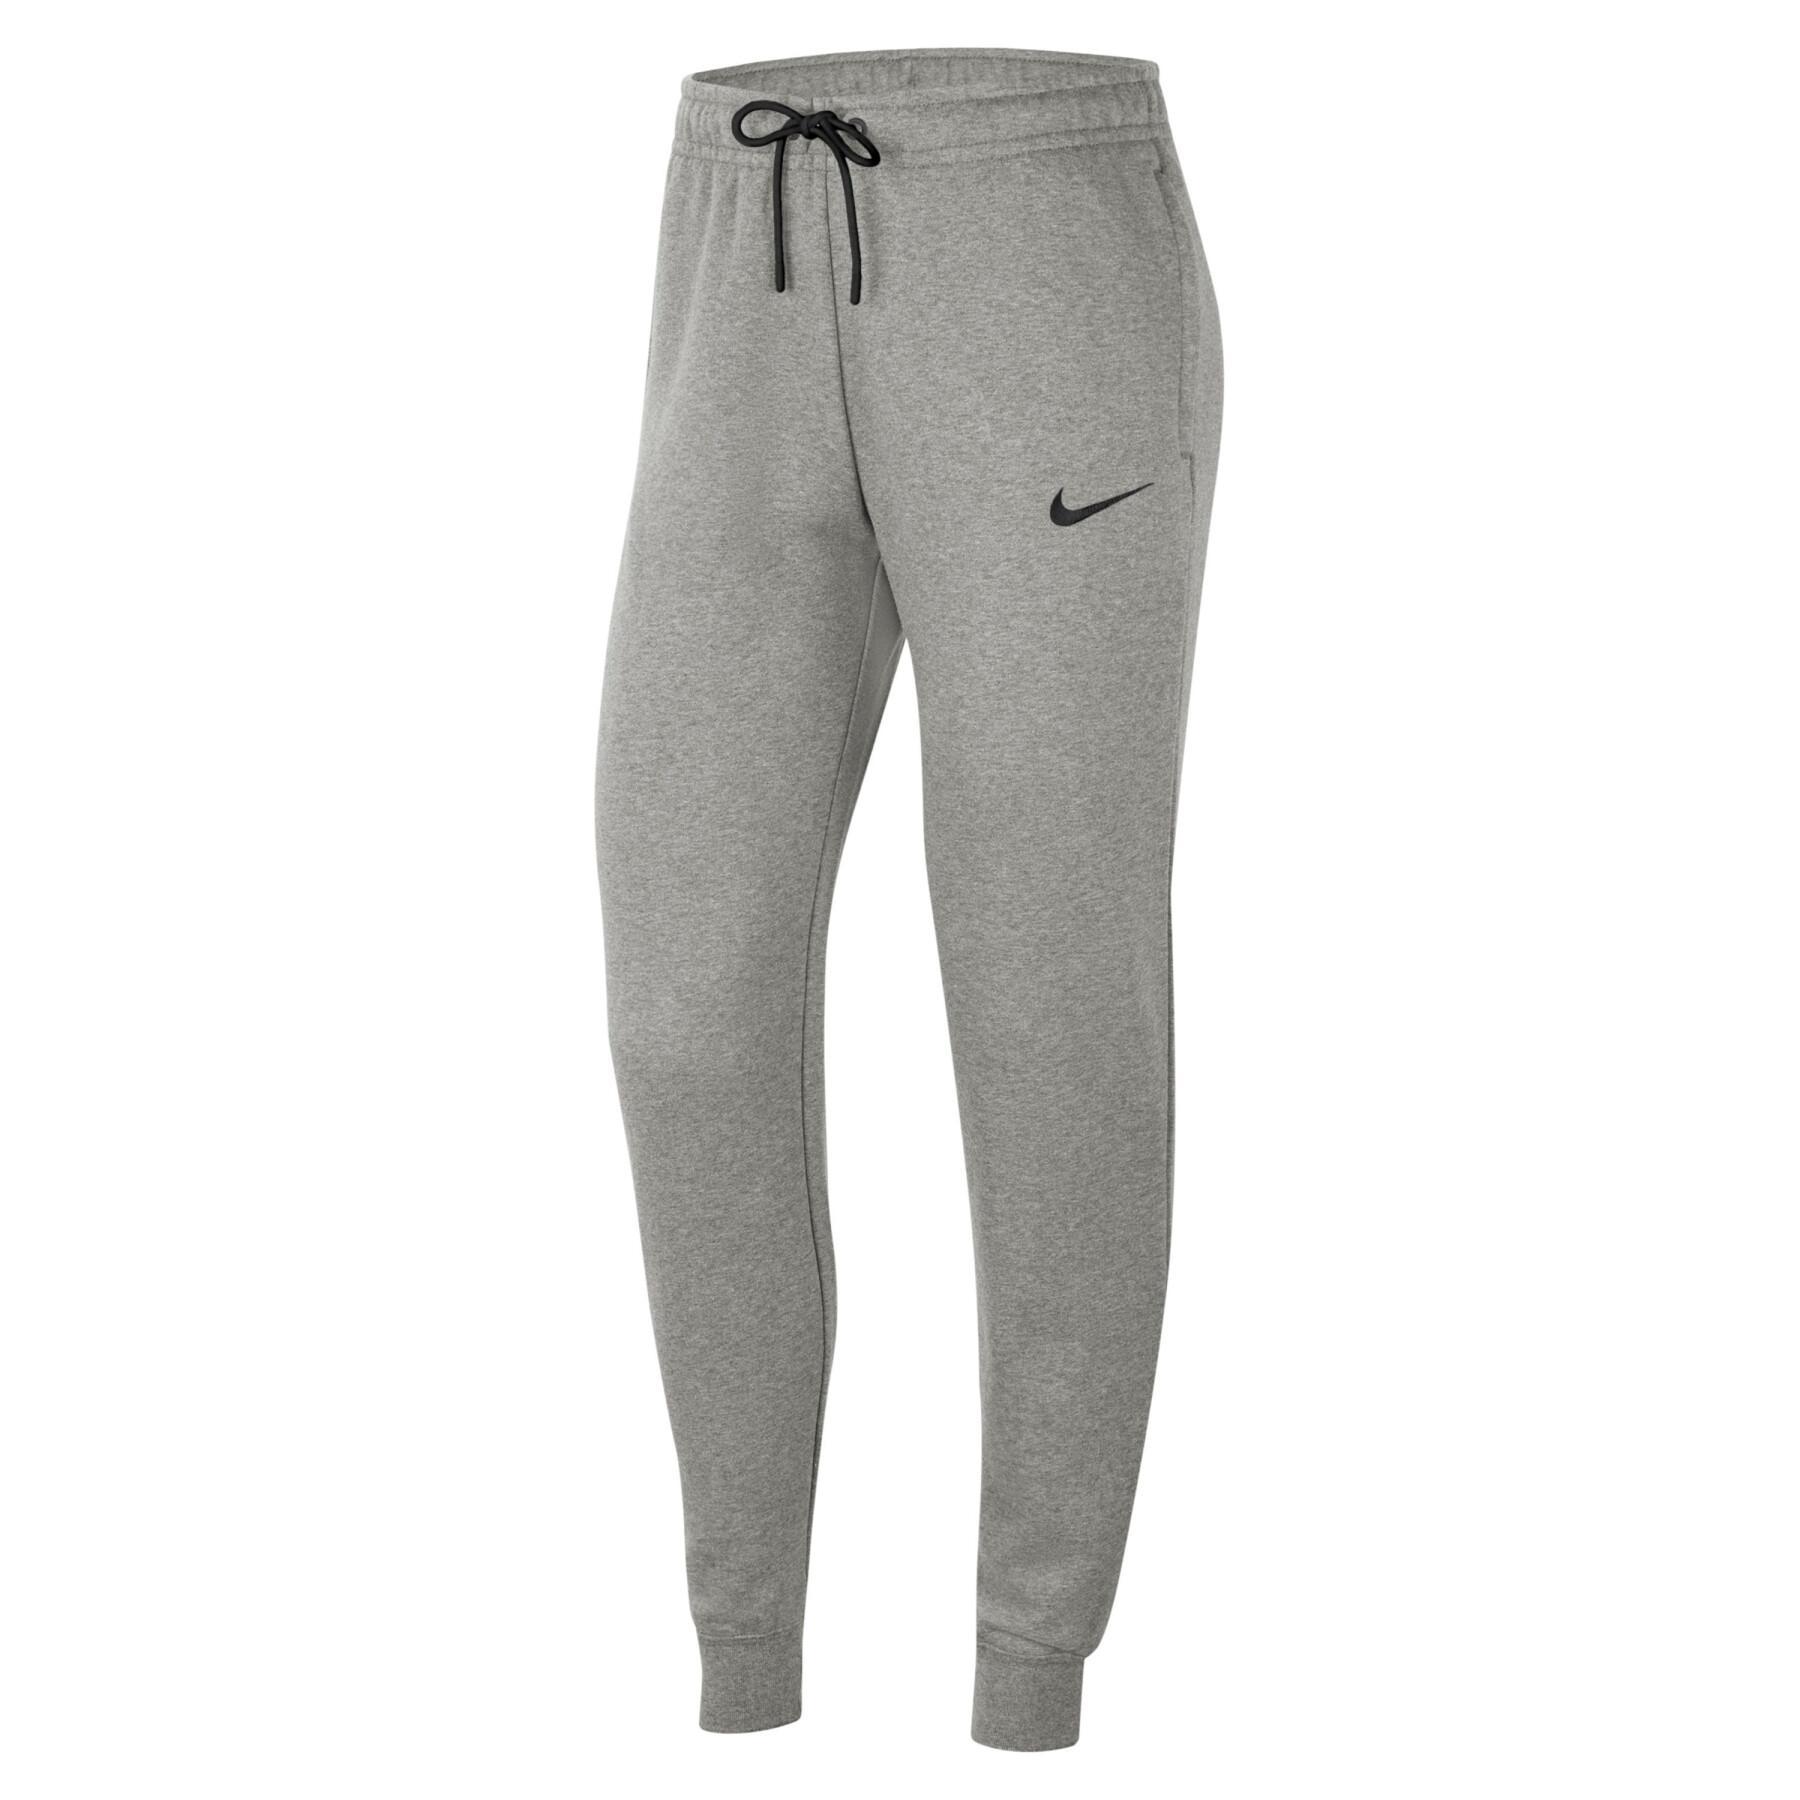 Women's pants Nike Fleece Park20